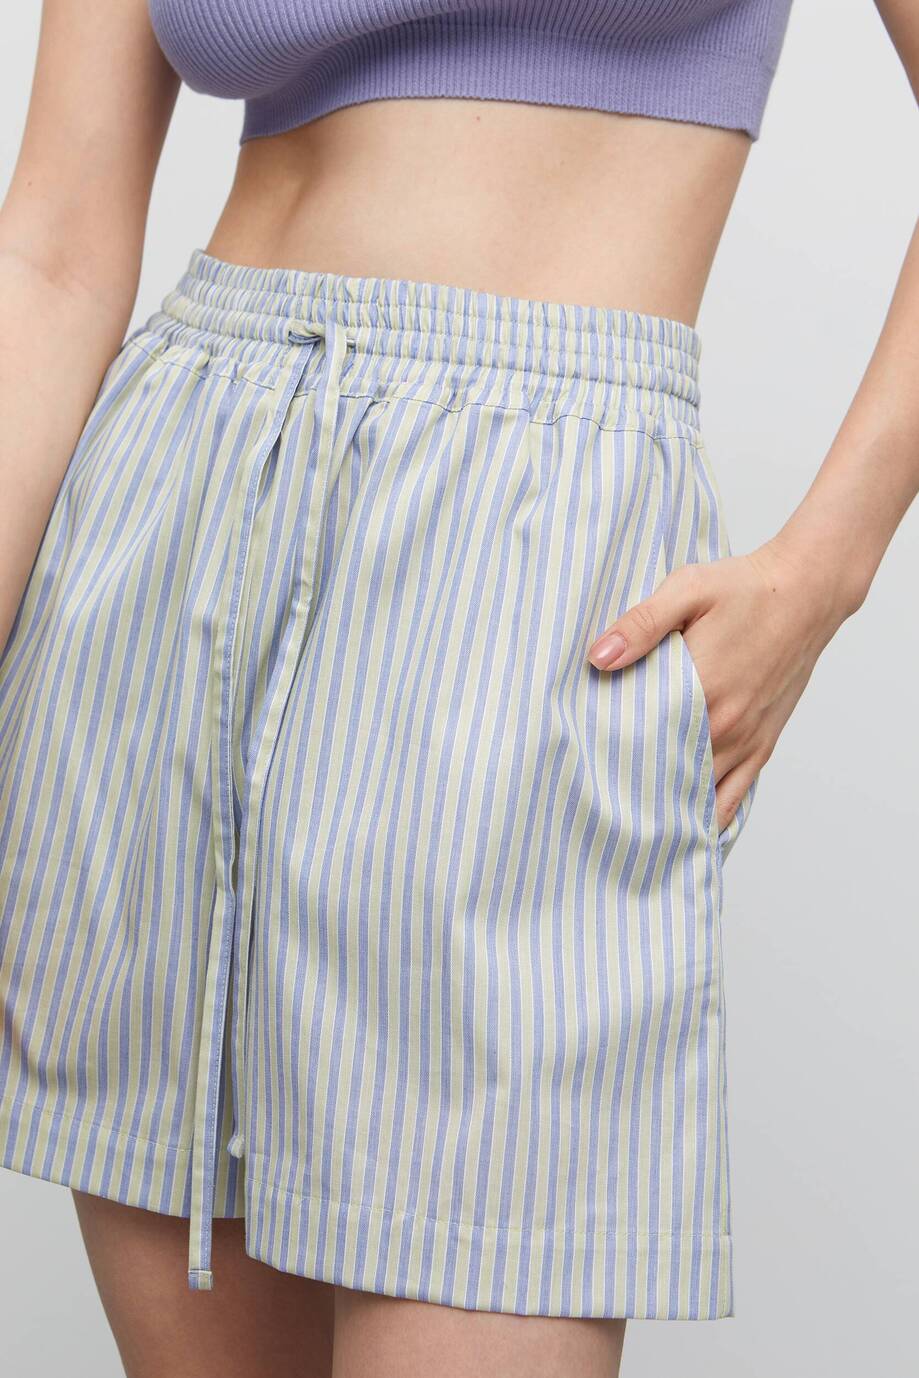 Pajama-style shorts